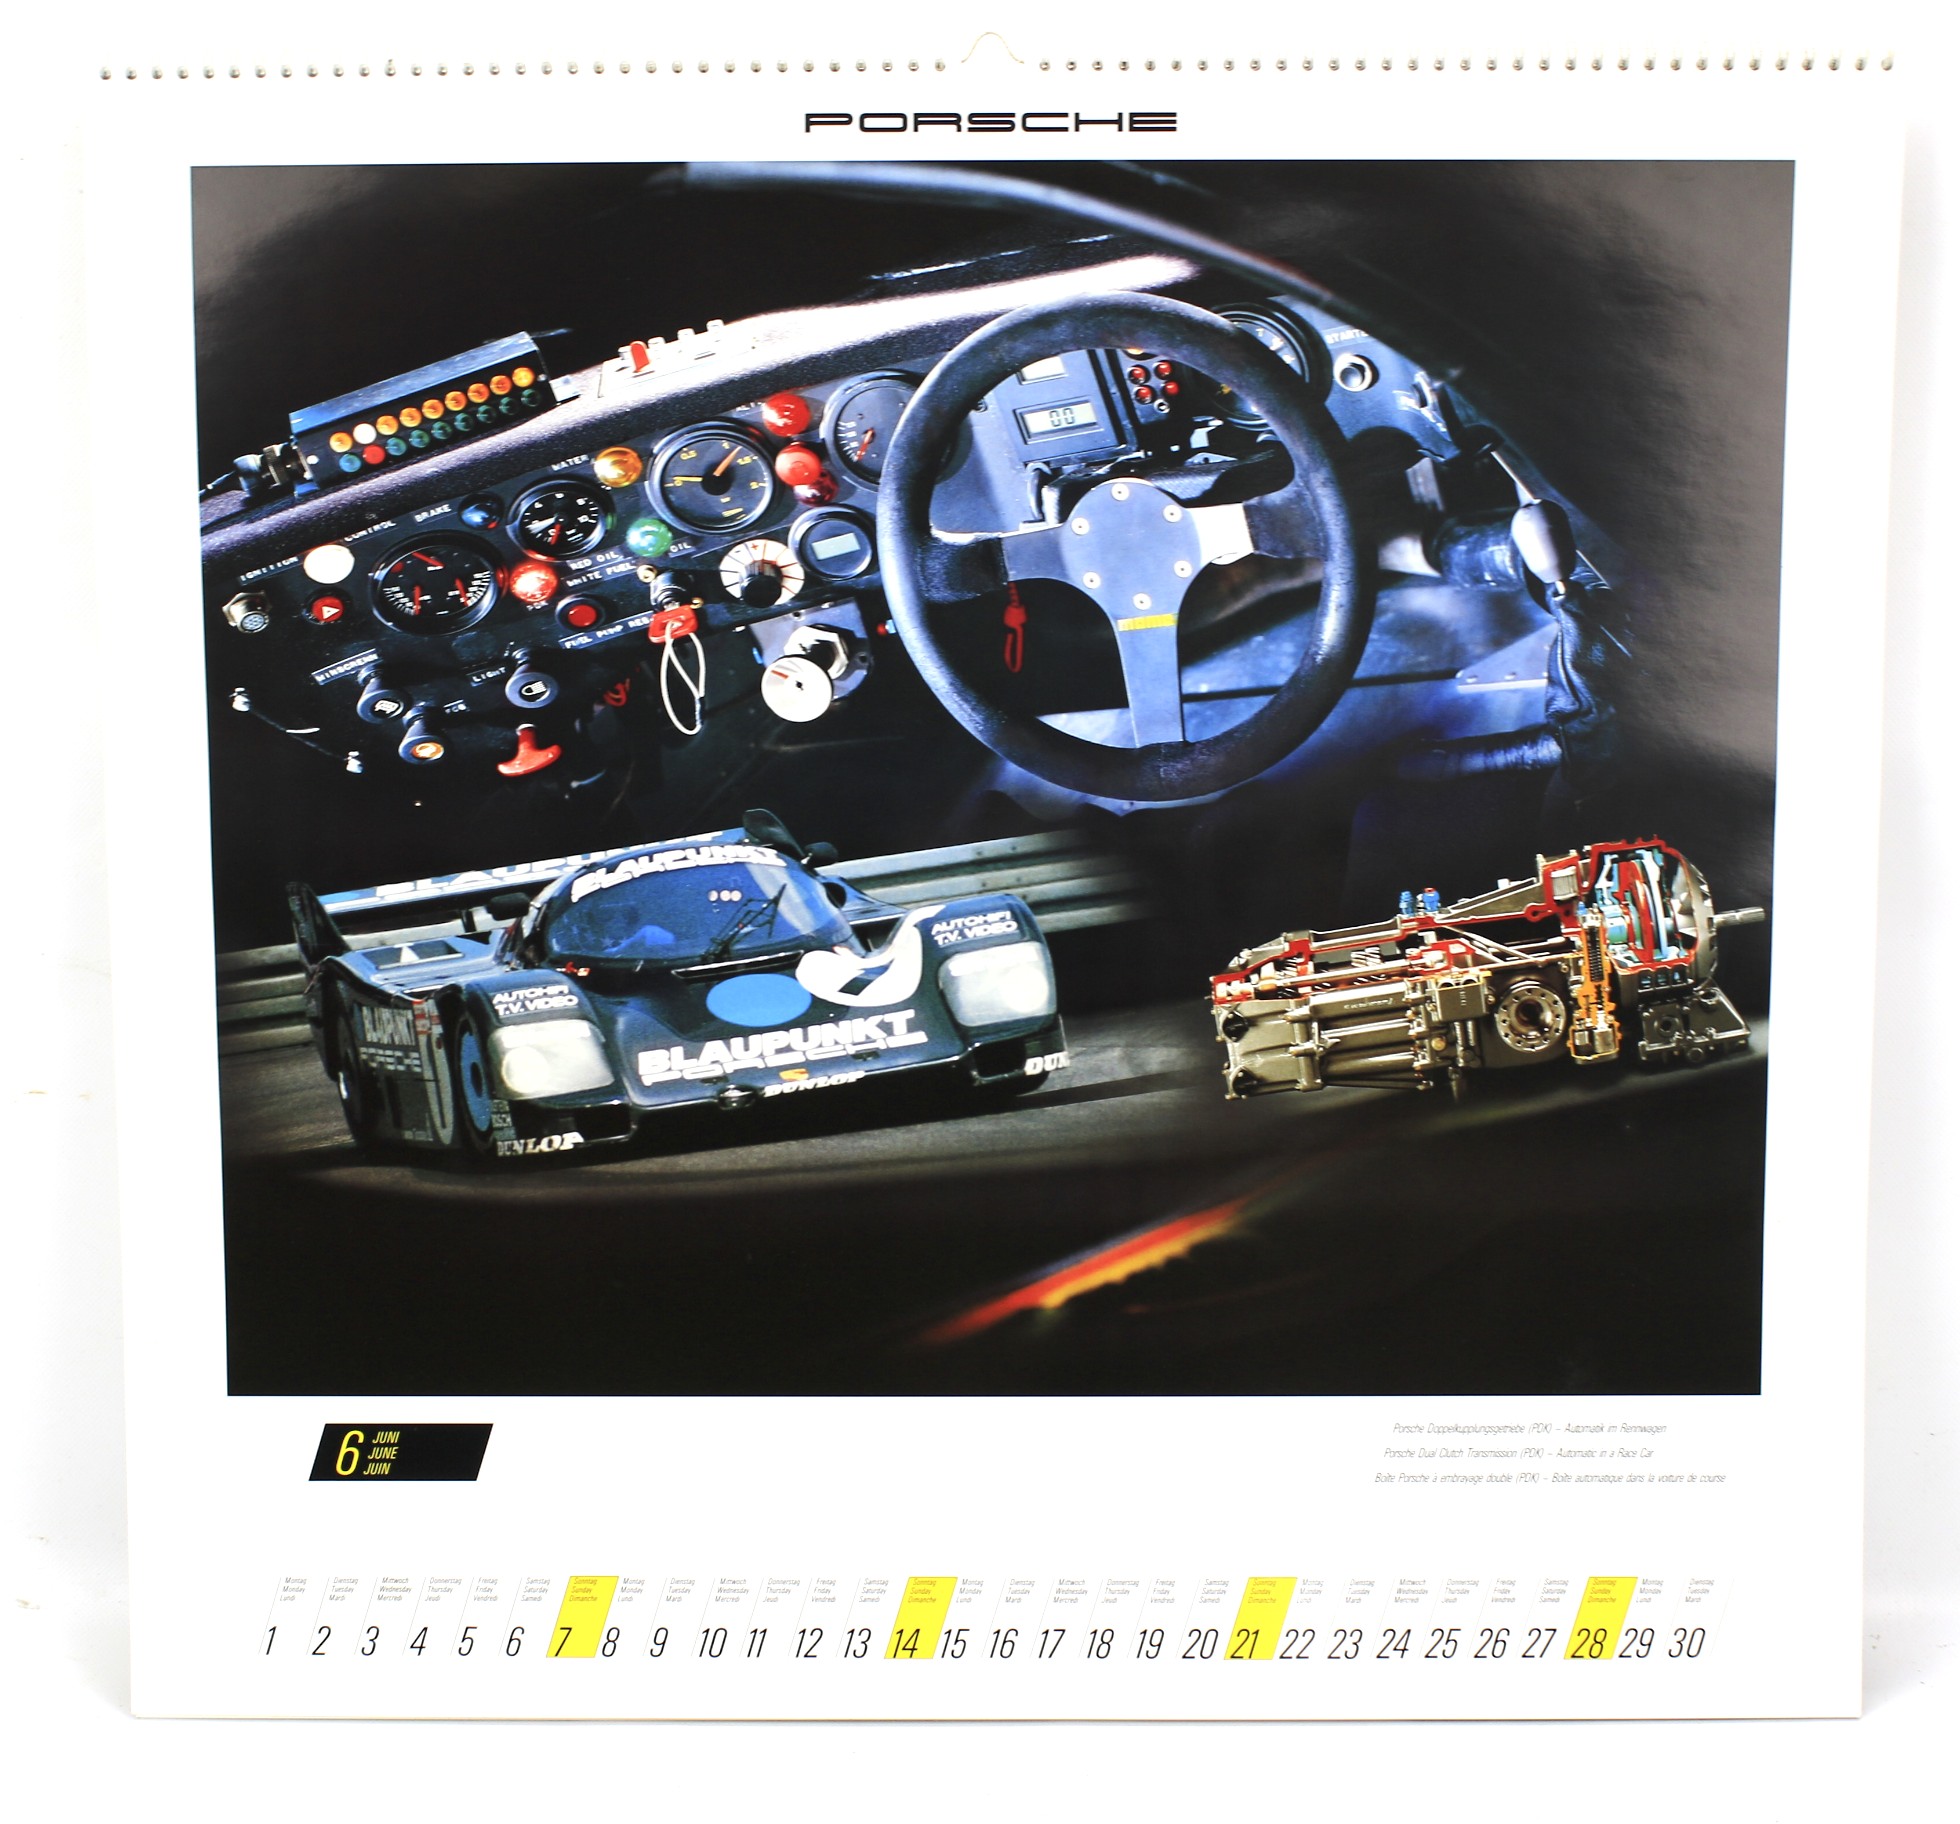 A 1987 Porsche Pirelli calendar. - Image 5 of 5